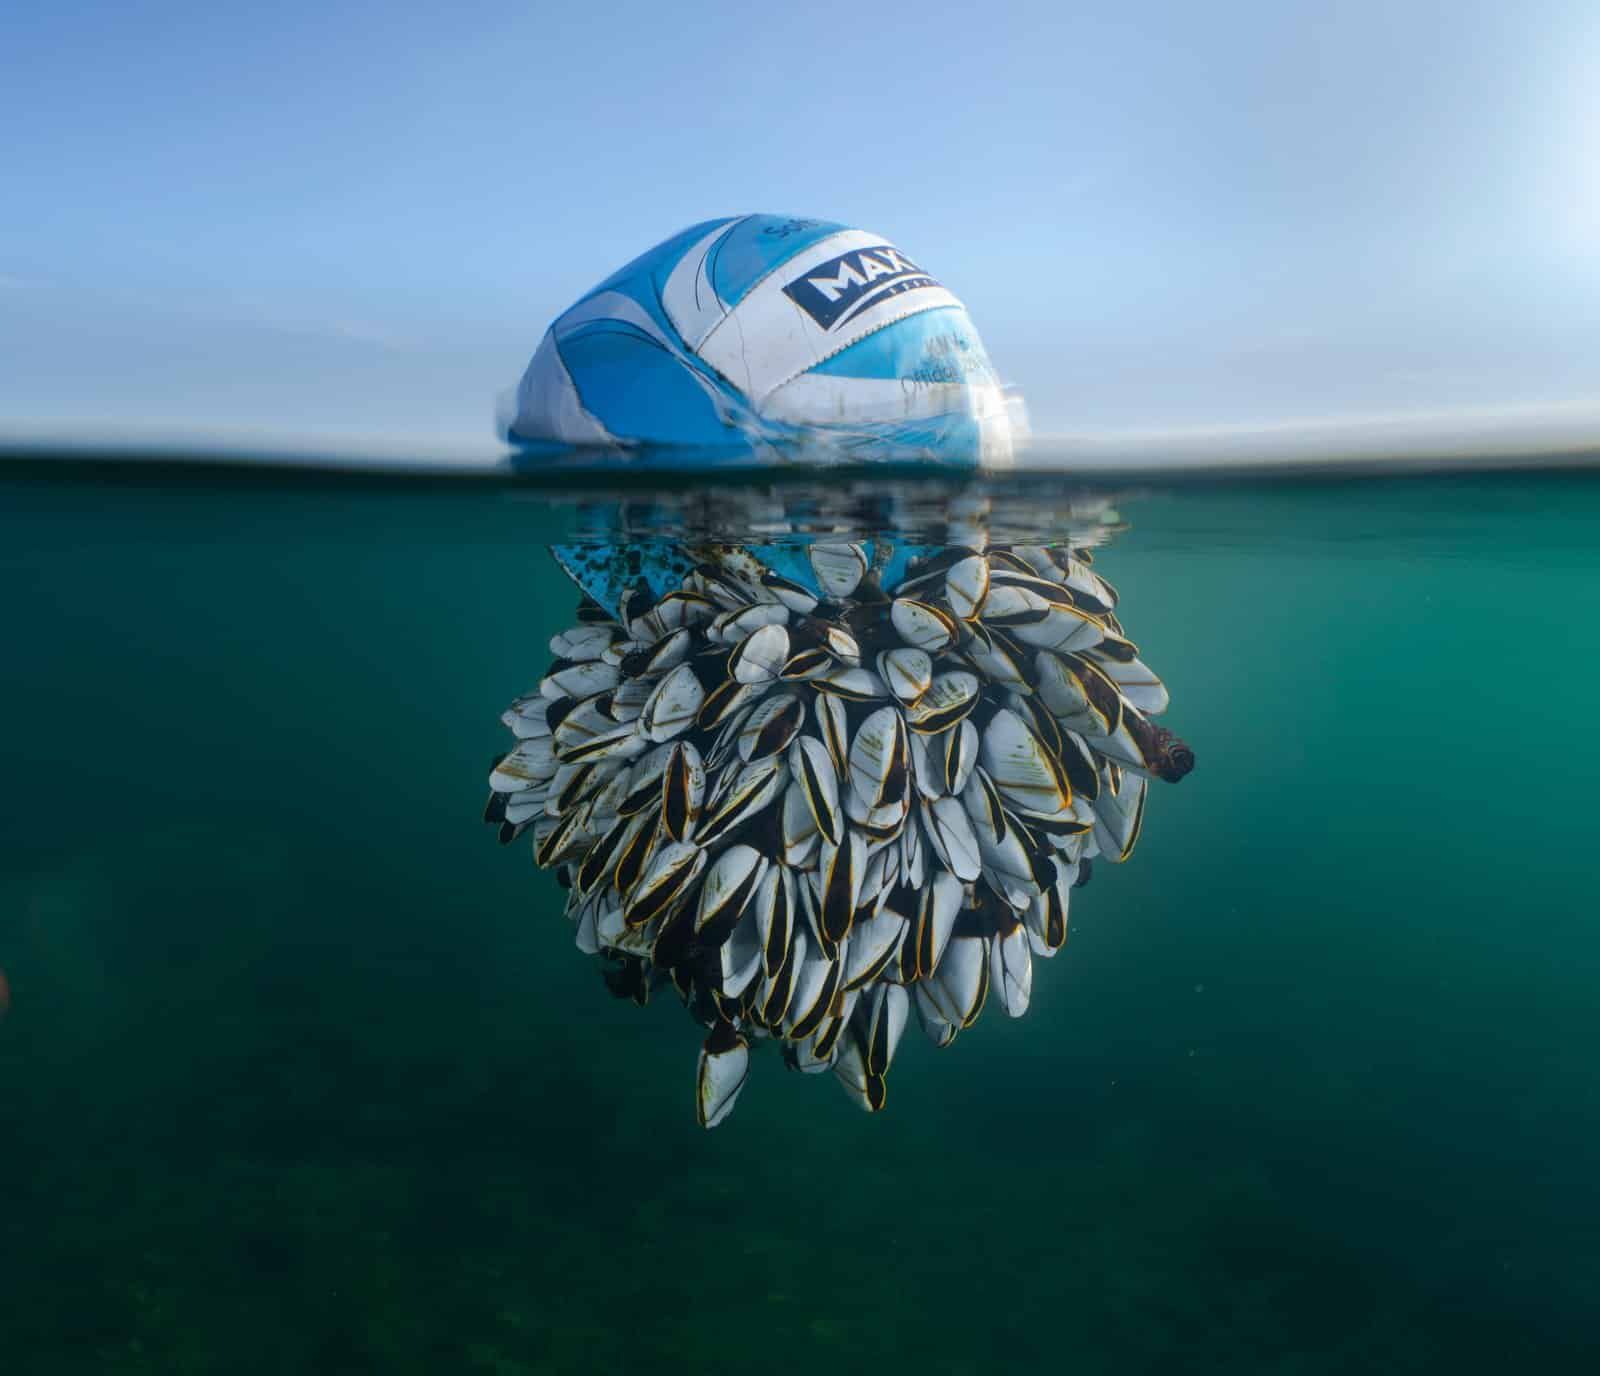 «Бродяга океана» — фотография футбольного мяча, покрытого ракушками ниже ватерлинии. Фото: Ryan Stalker.